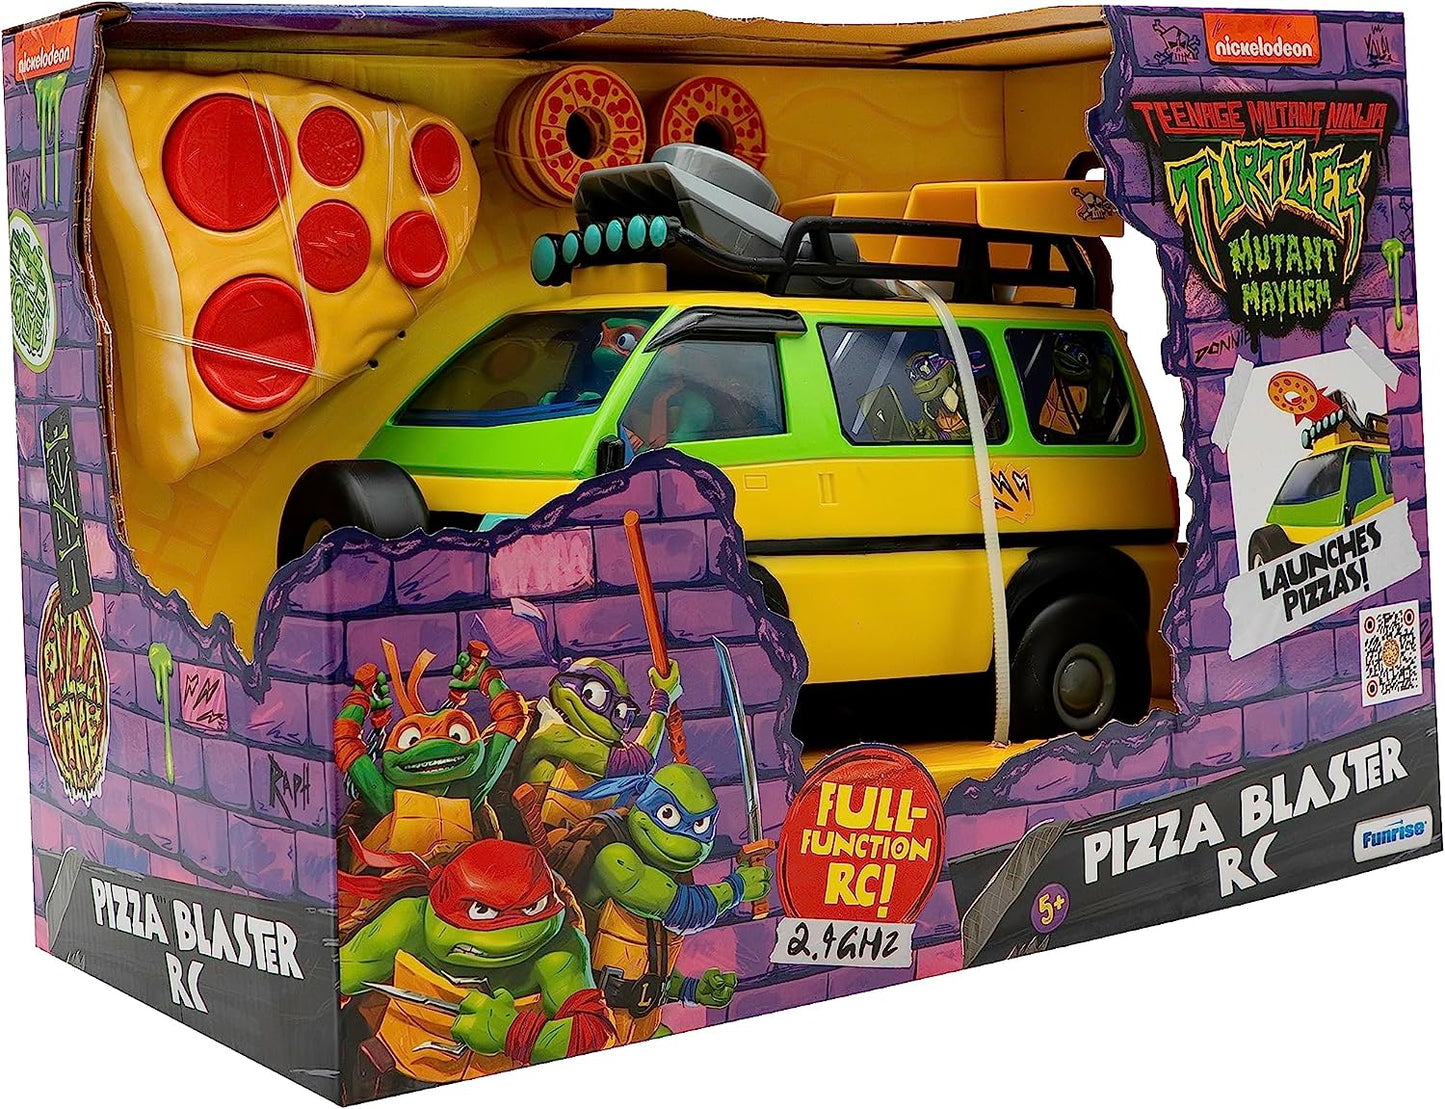 TMNT Teenage Mutant Ninja Turtles Pizza Blaster RC Movie Edition